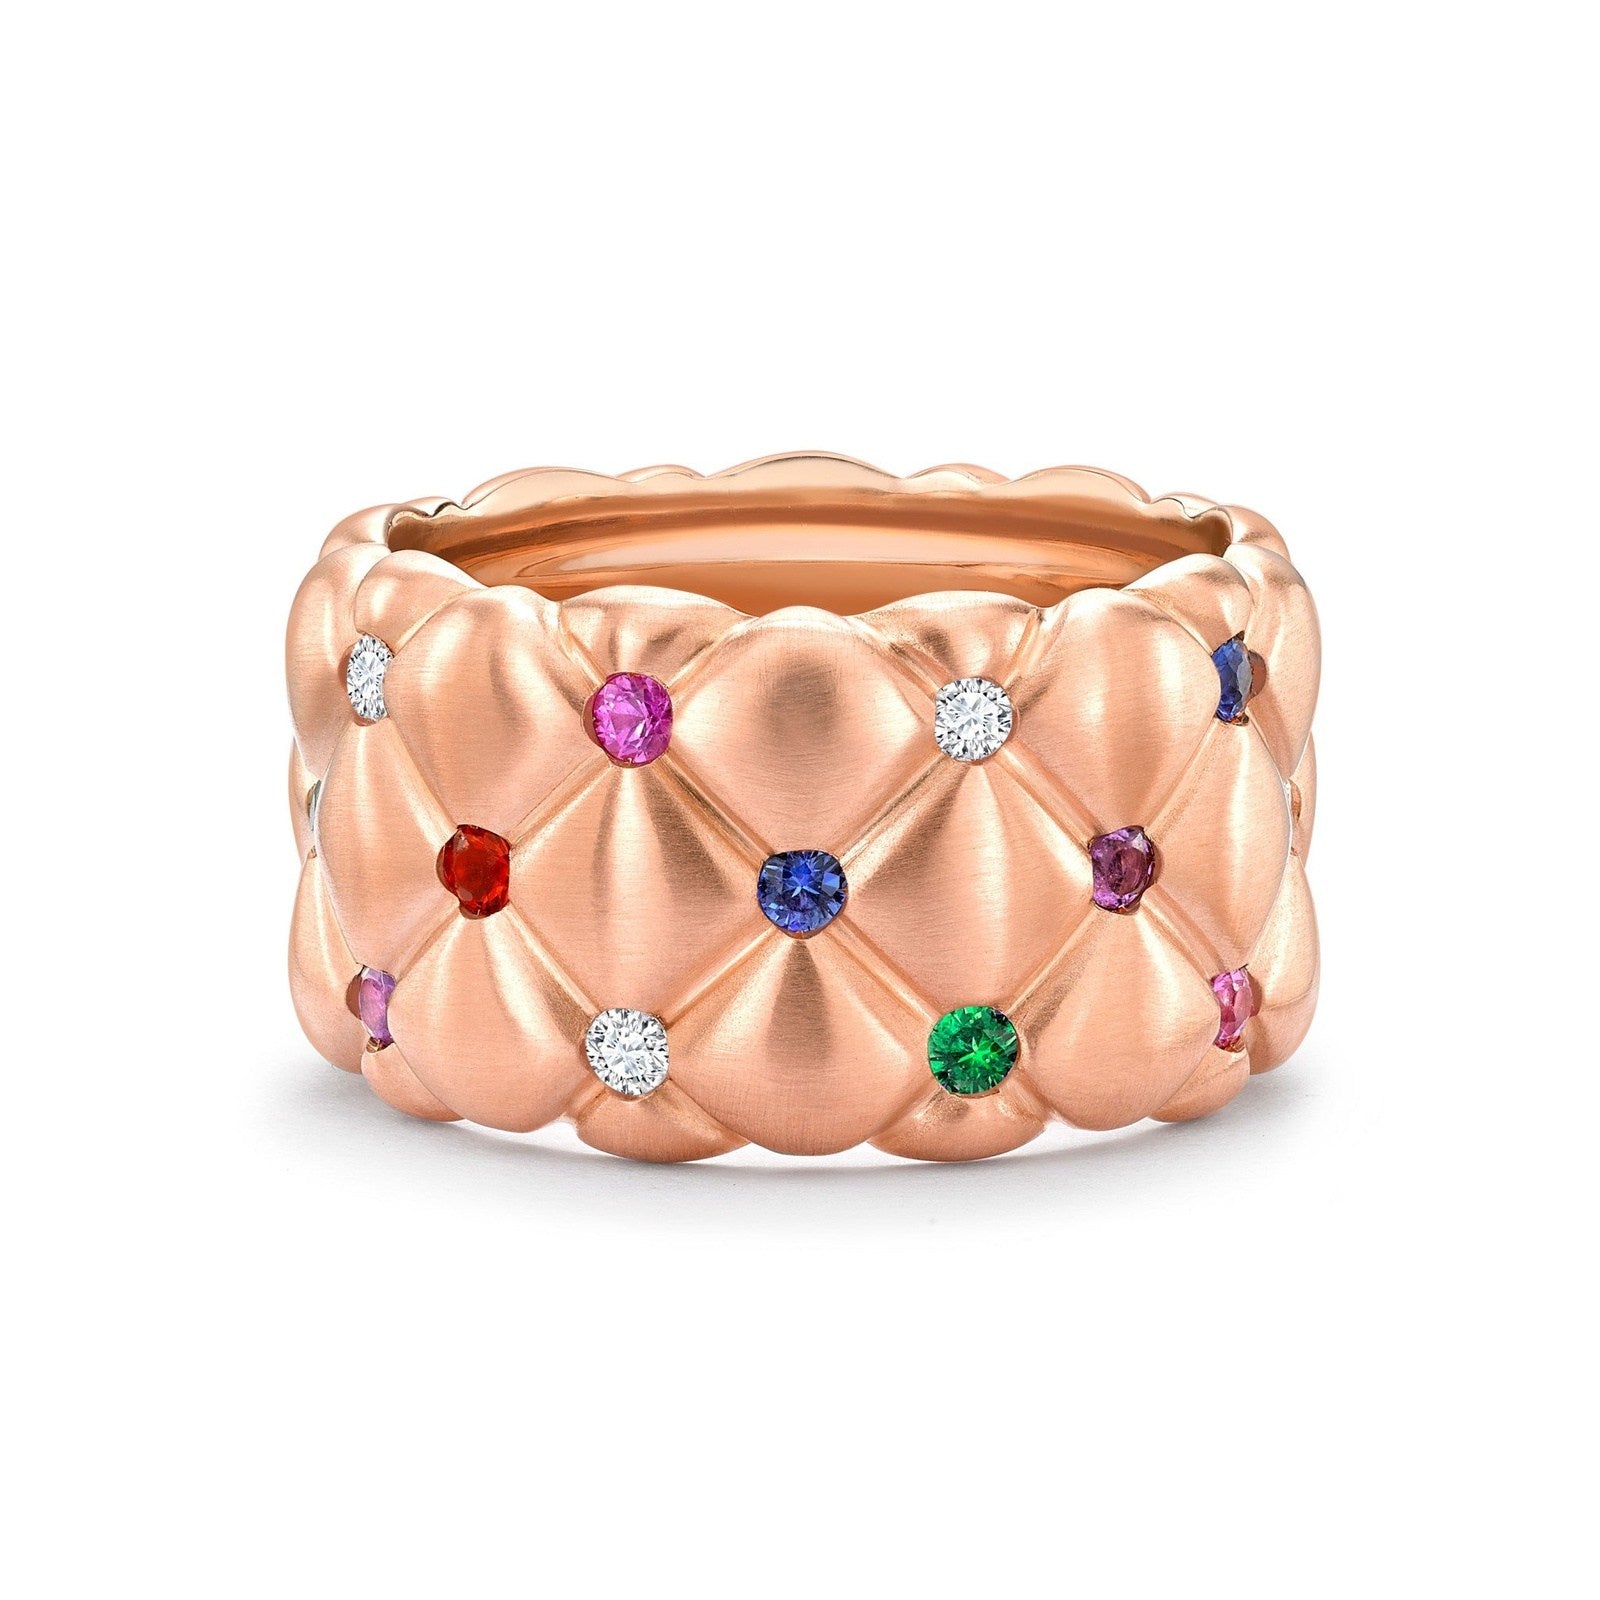 Faberge Treillage Brushed Rose Gold & Multicoloured Gemstone Set Grand Ring - 530RG1358